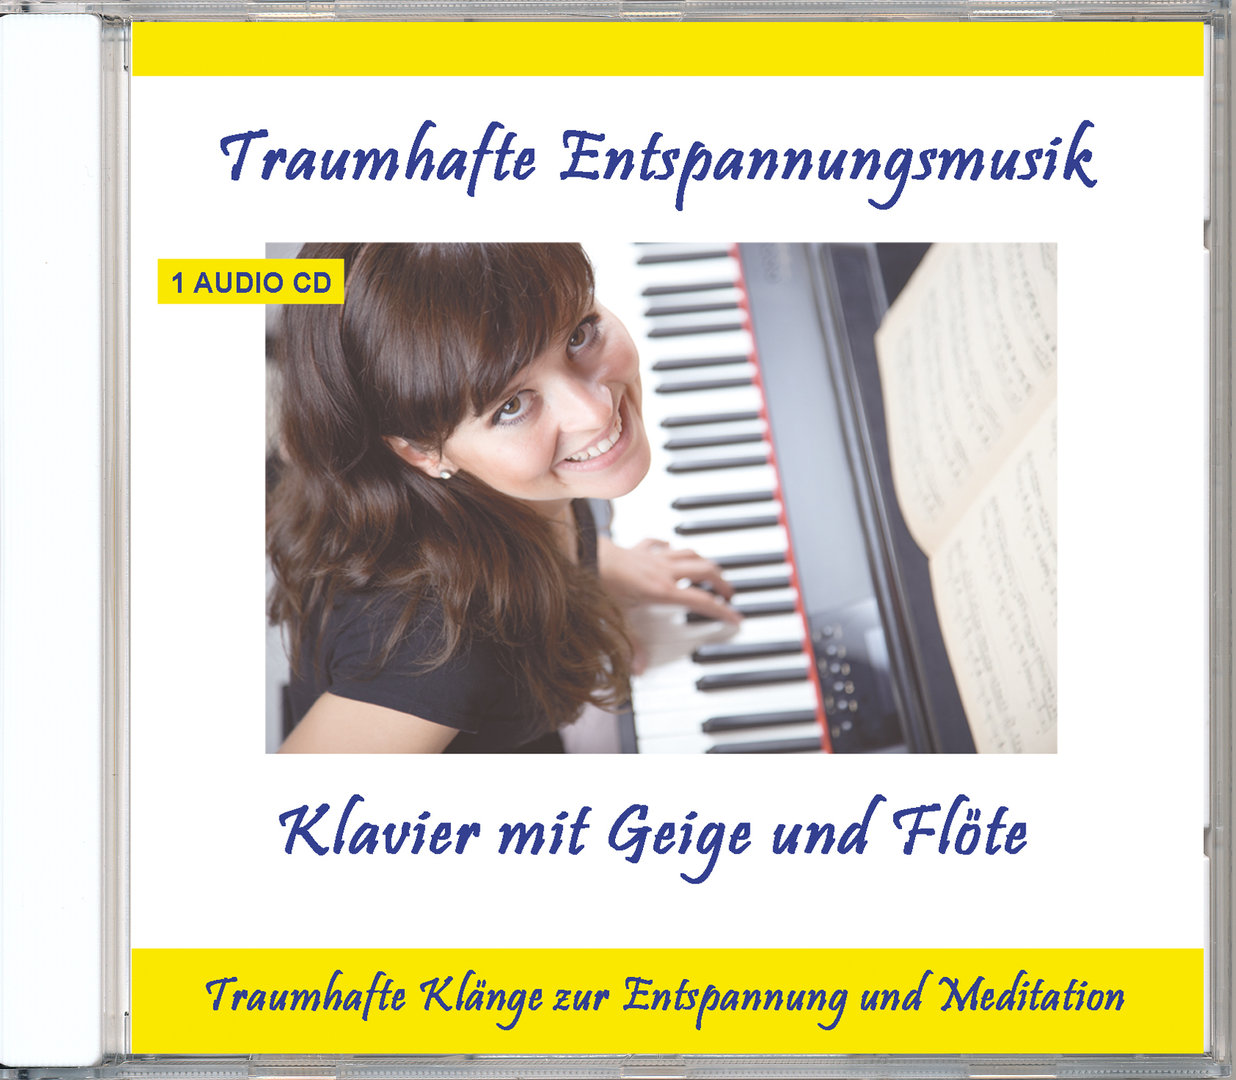 Traumhafte Entspannungsmusik – Klavier mit Geige und Flöte - Audio-CD